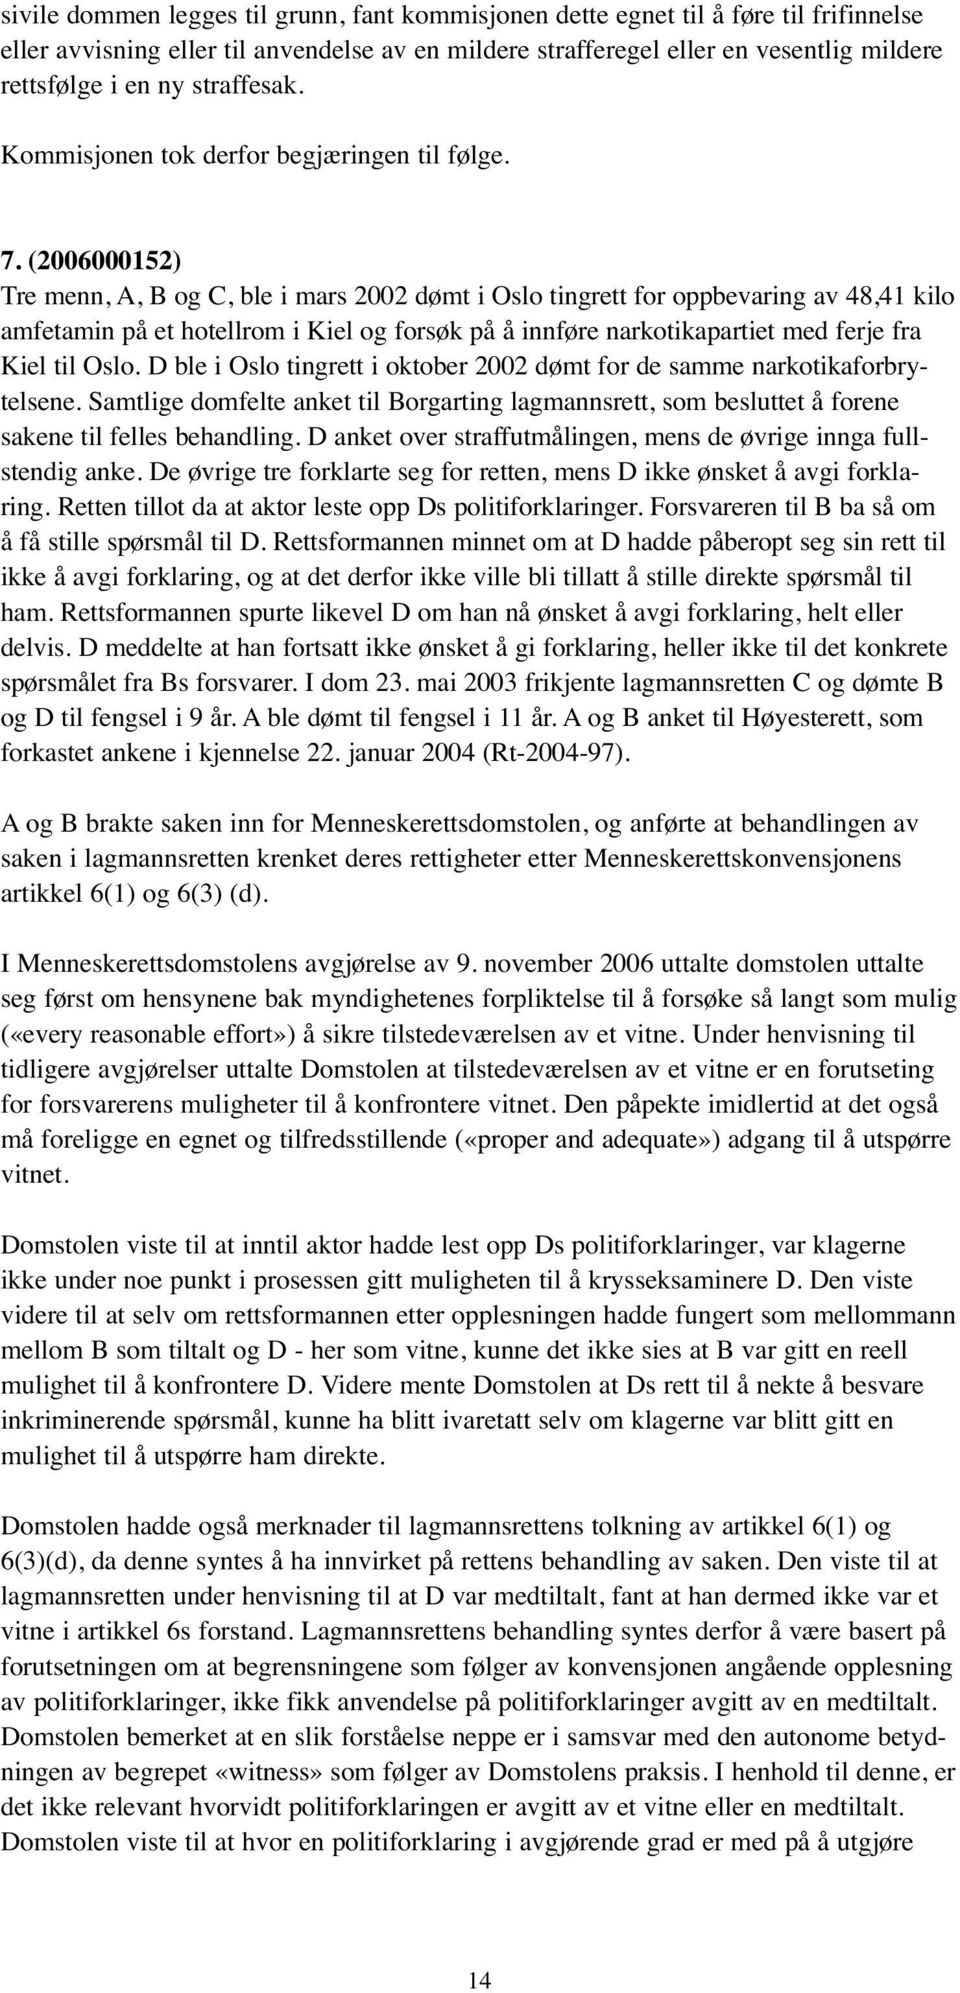 (2006000152) Tre menn, A, B og C, ble i mars 2002 dømt i Oslo tingrett for oppbevaring av 48,41 kilo amfetamin på et hotellrom i Kiel og forsøk på å innføre narkotikapartiet med ferje fra Kiel til